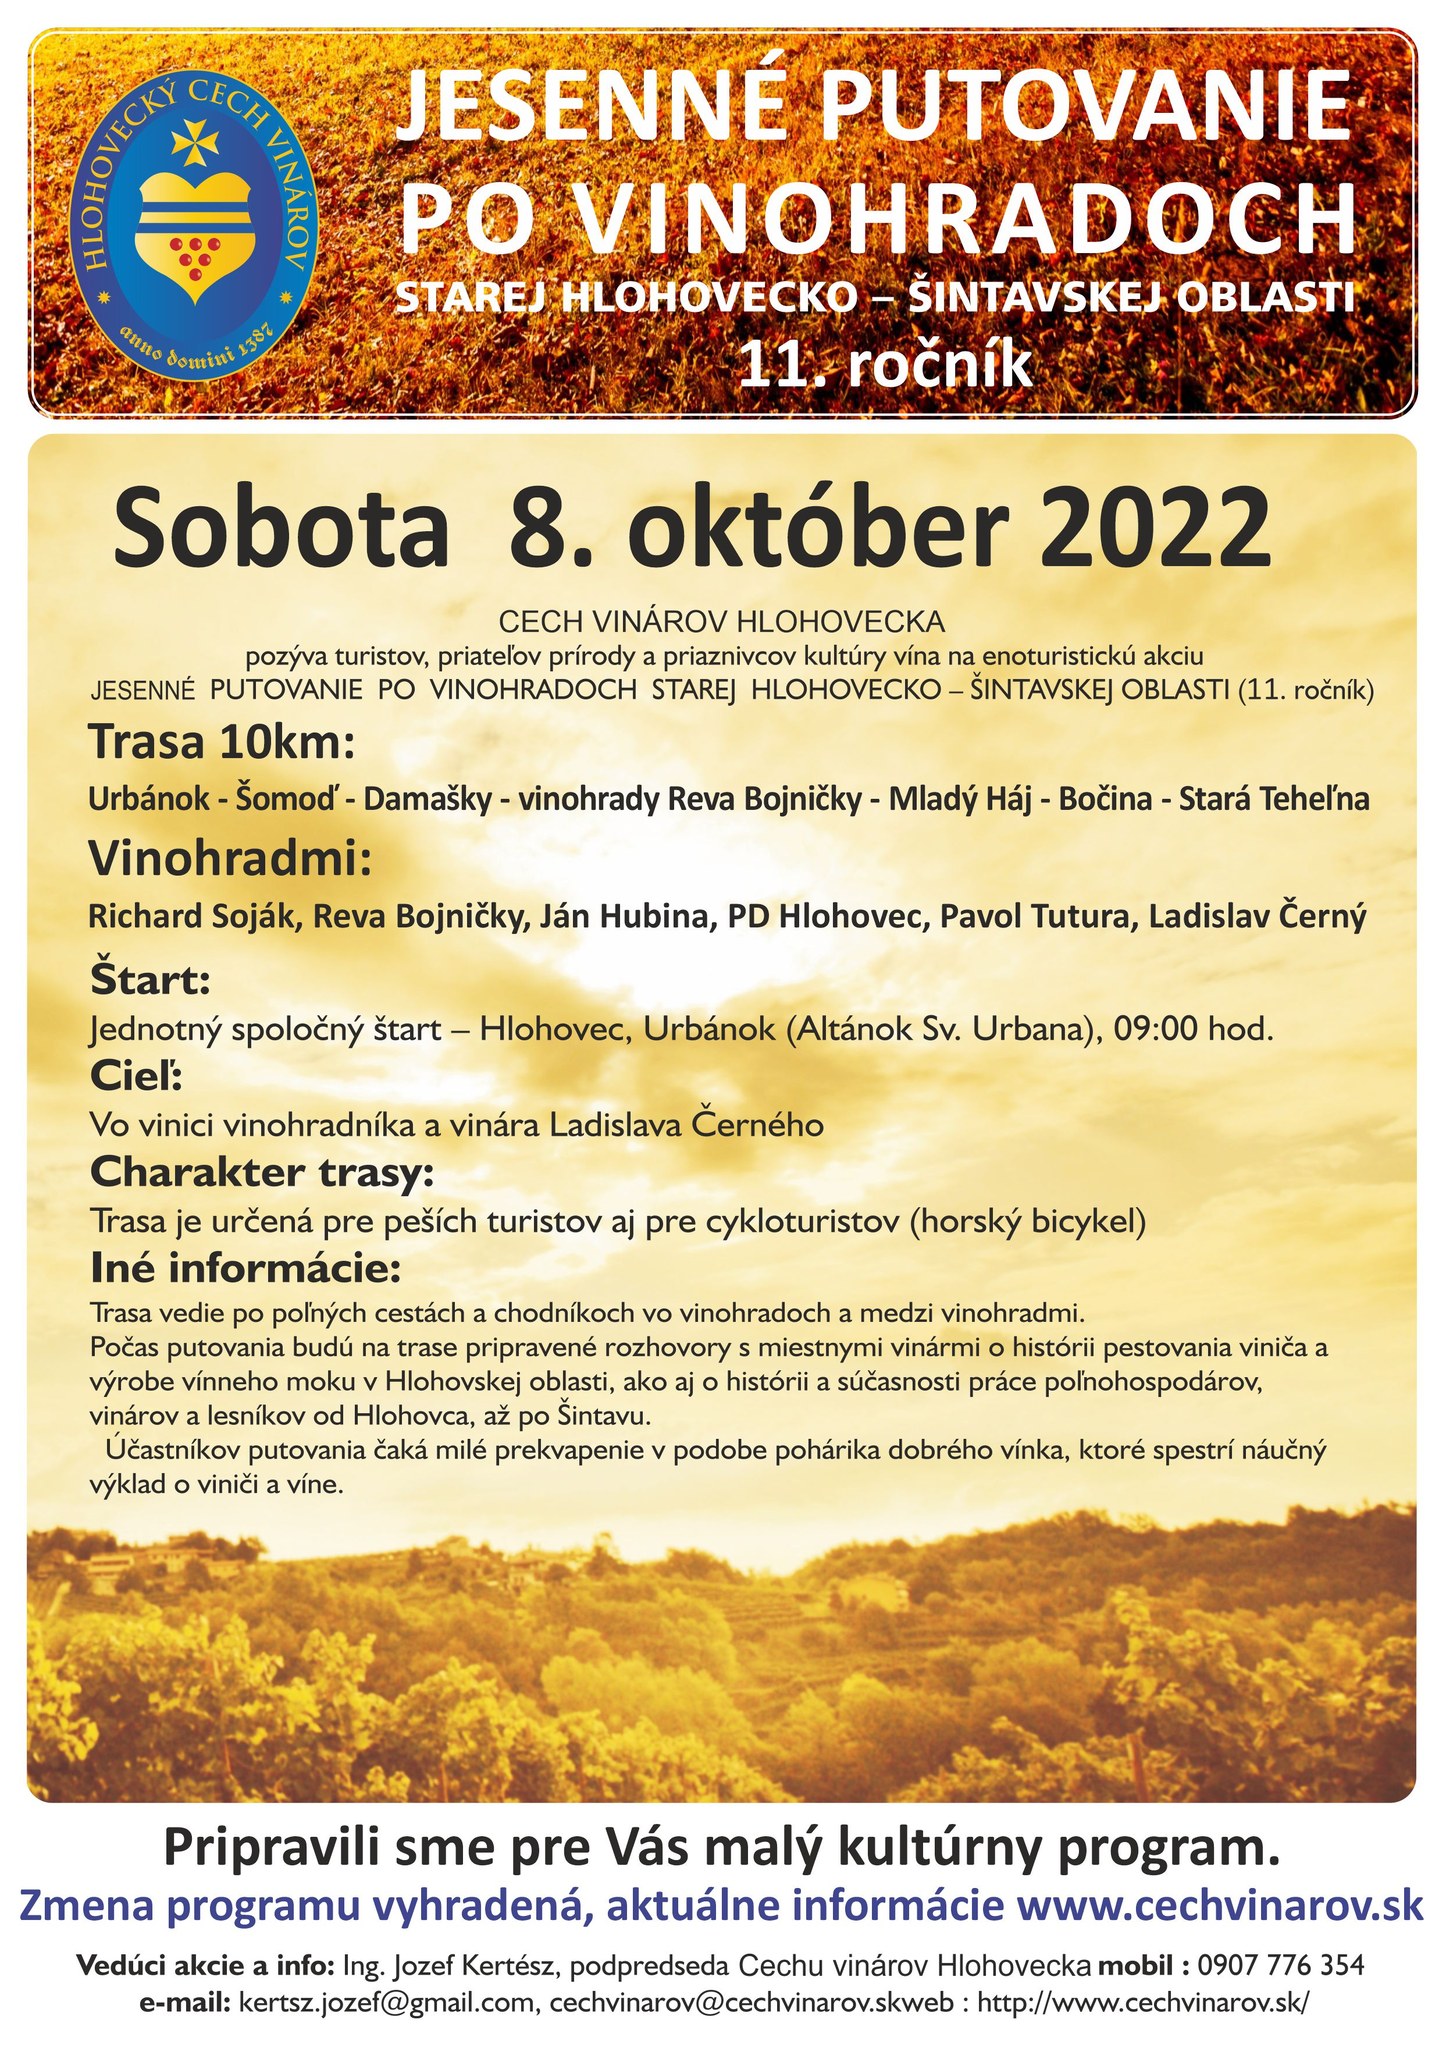 Jesenn putovanie po vinohradoch 2022 Hlohovec - 11. ronk